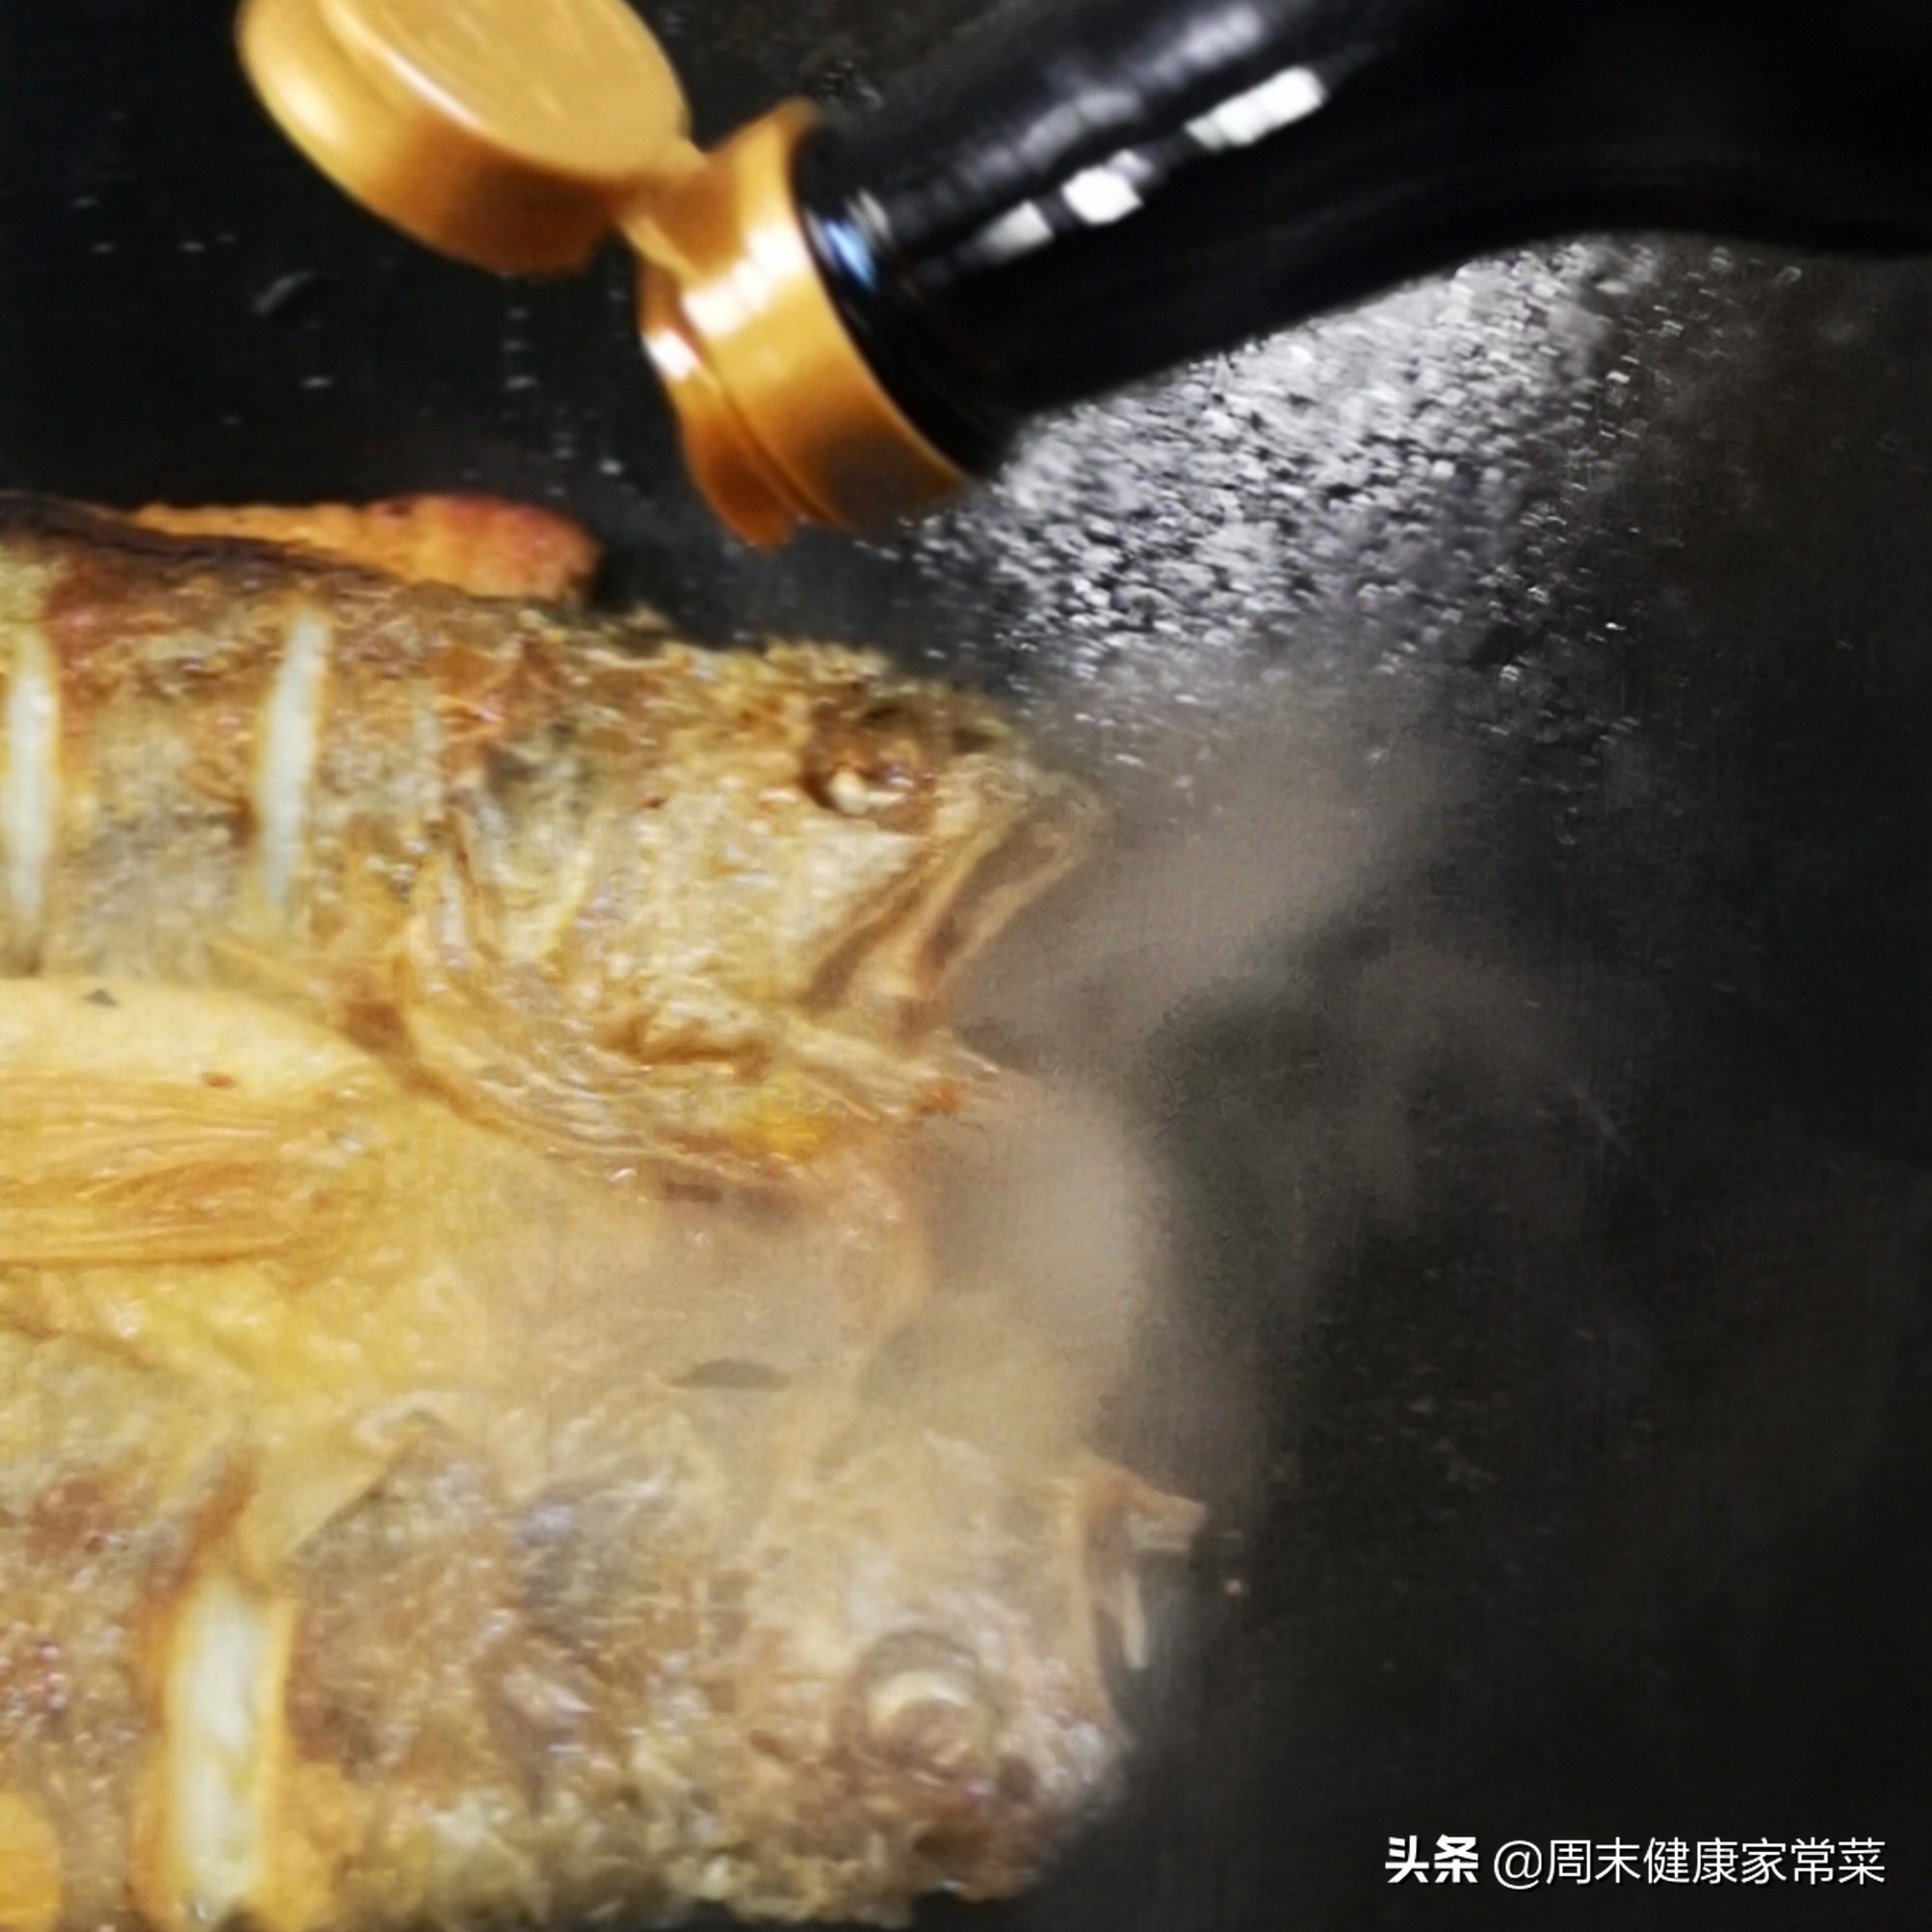 香煎黄花鱼，只要4分钟就煎好，鱼不粘锅、又要刚好熟透，看看吧